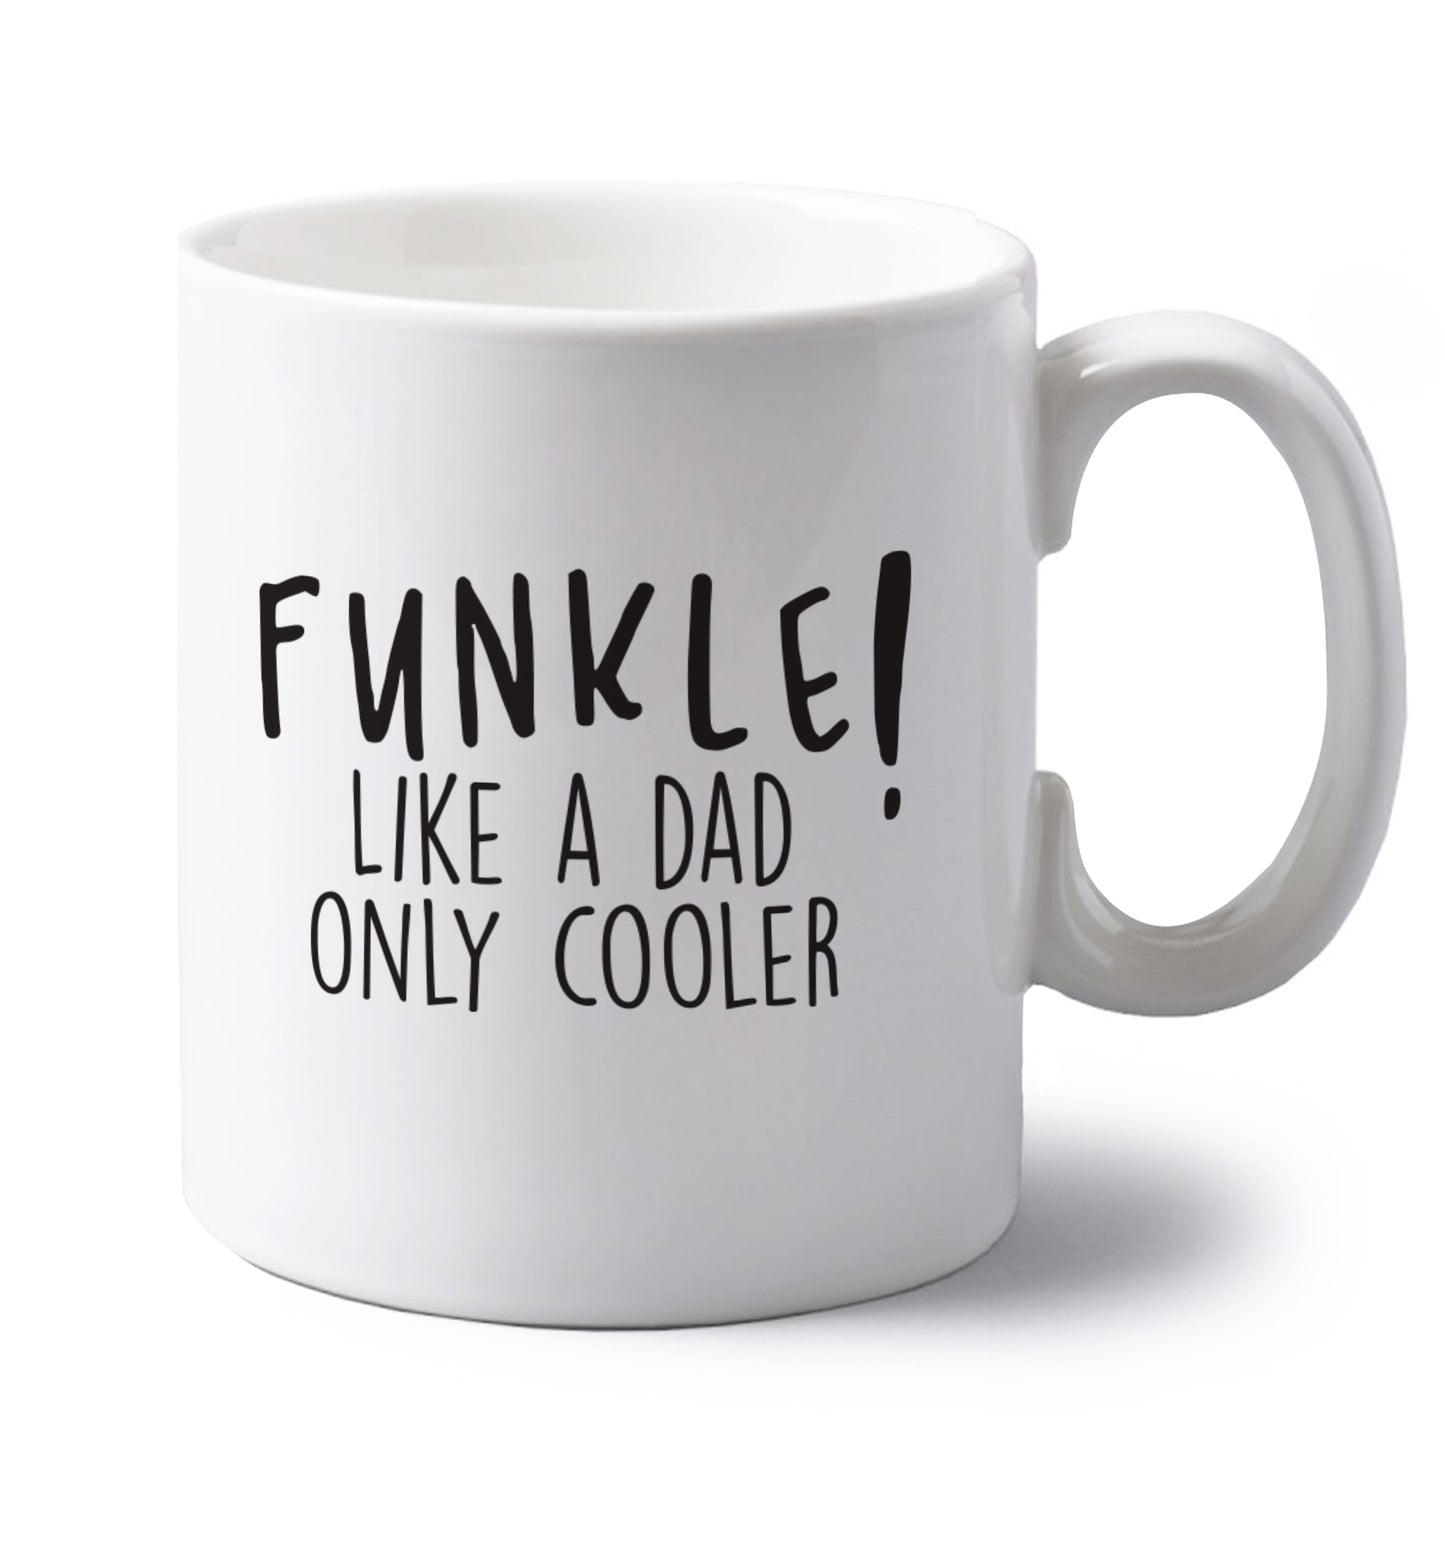 Funkle Like a Dad Only Cooler left handed white ceramic mug 